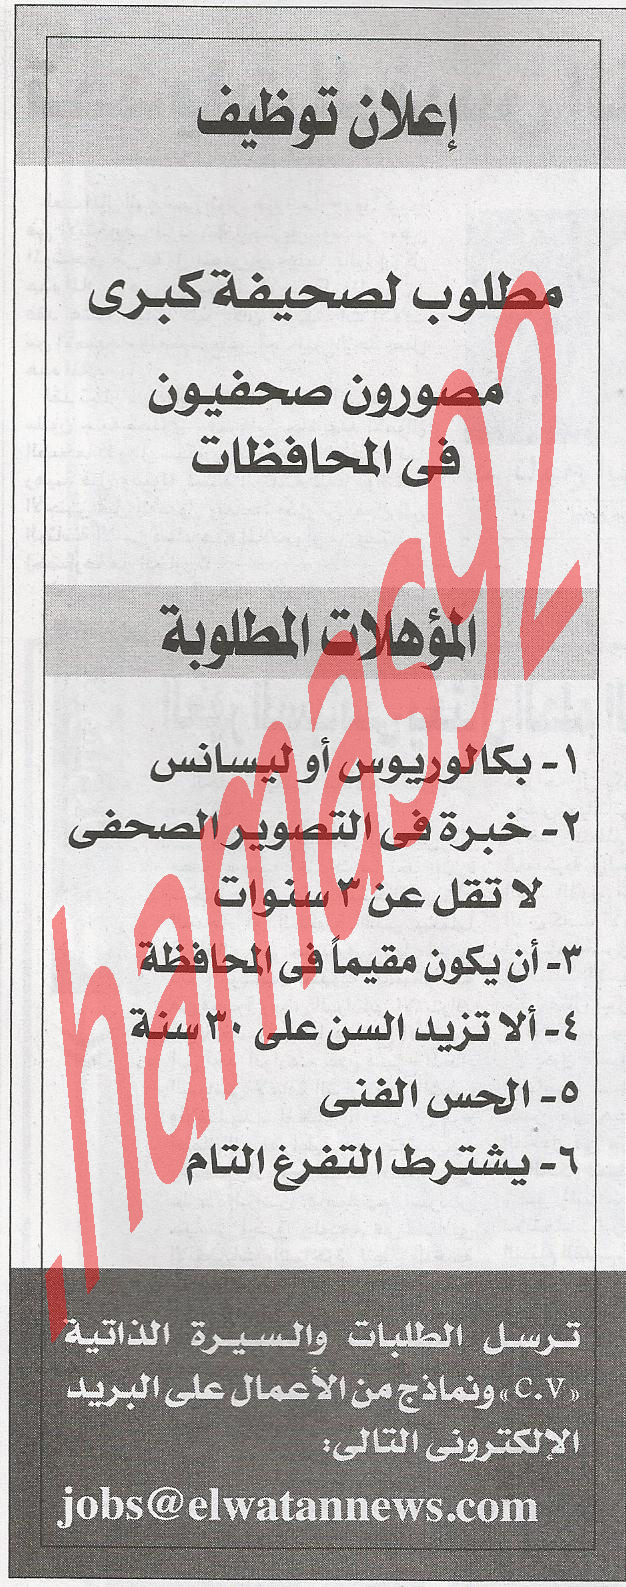  وظائف جريدة الوطن المصرية الاثنين 4\6\2012  %D8%A7%D9%84%D9%88%D8%B7%D9%86+%D9%85%D8%B5%D8%B1